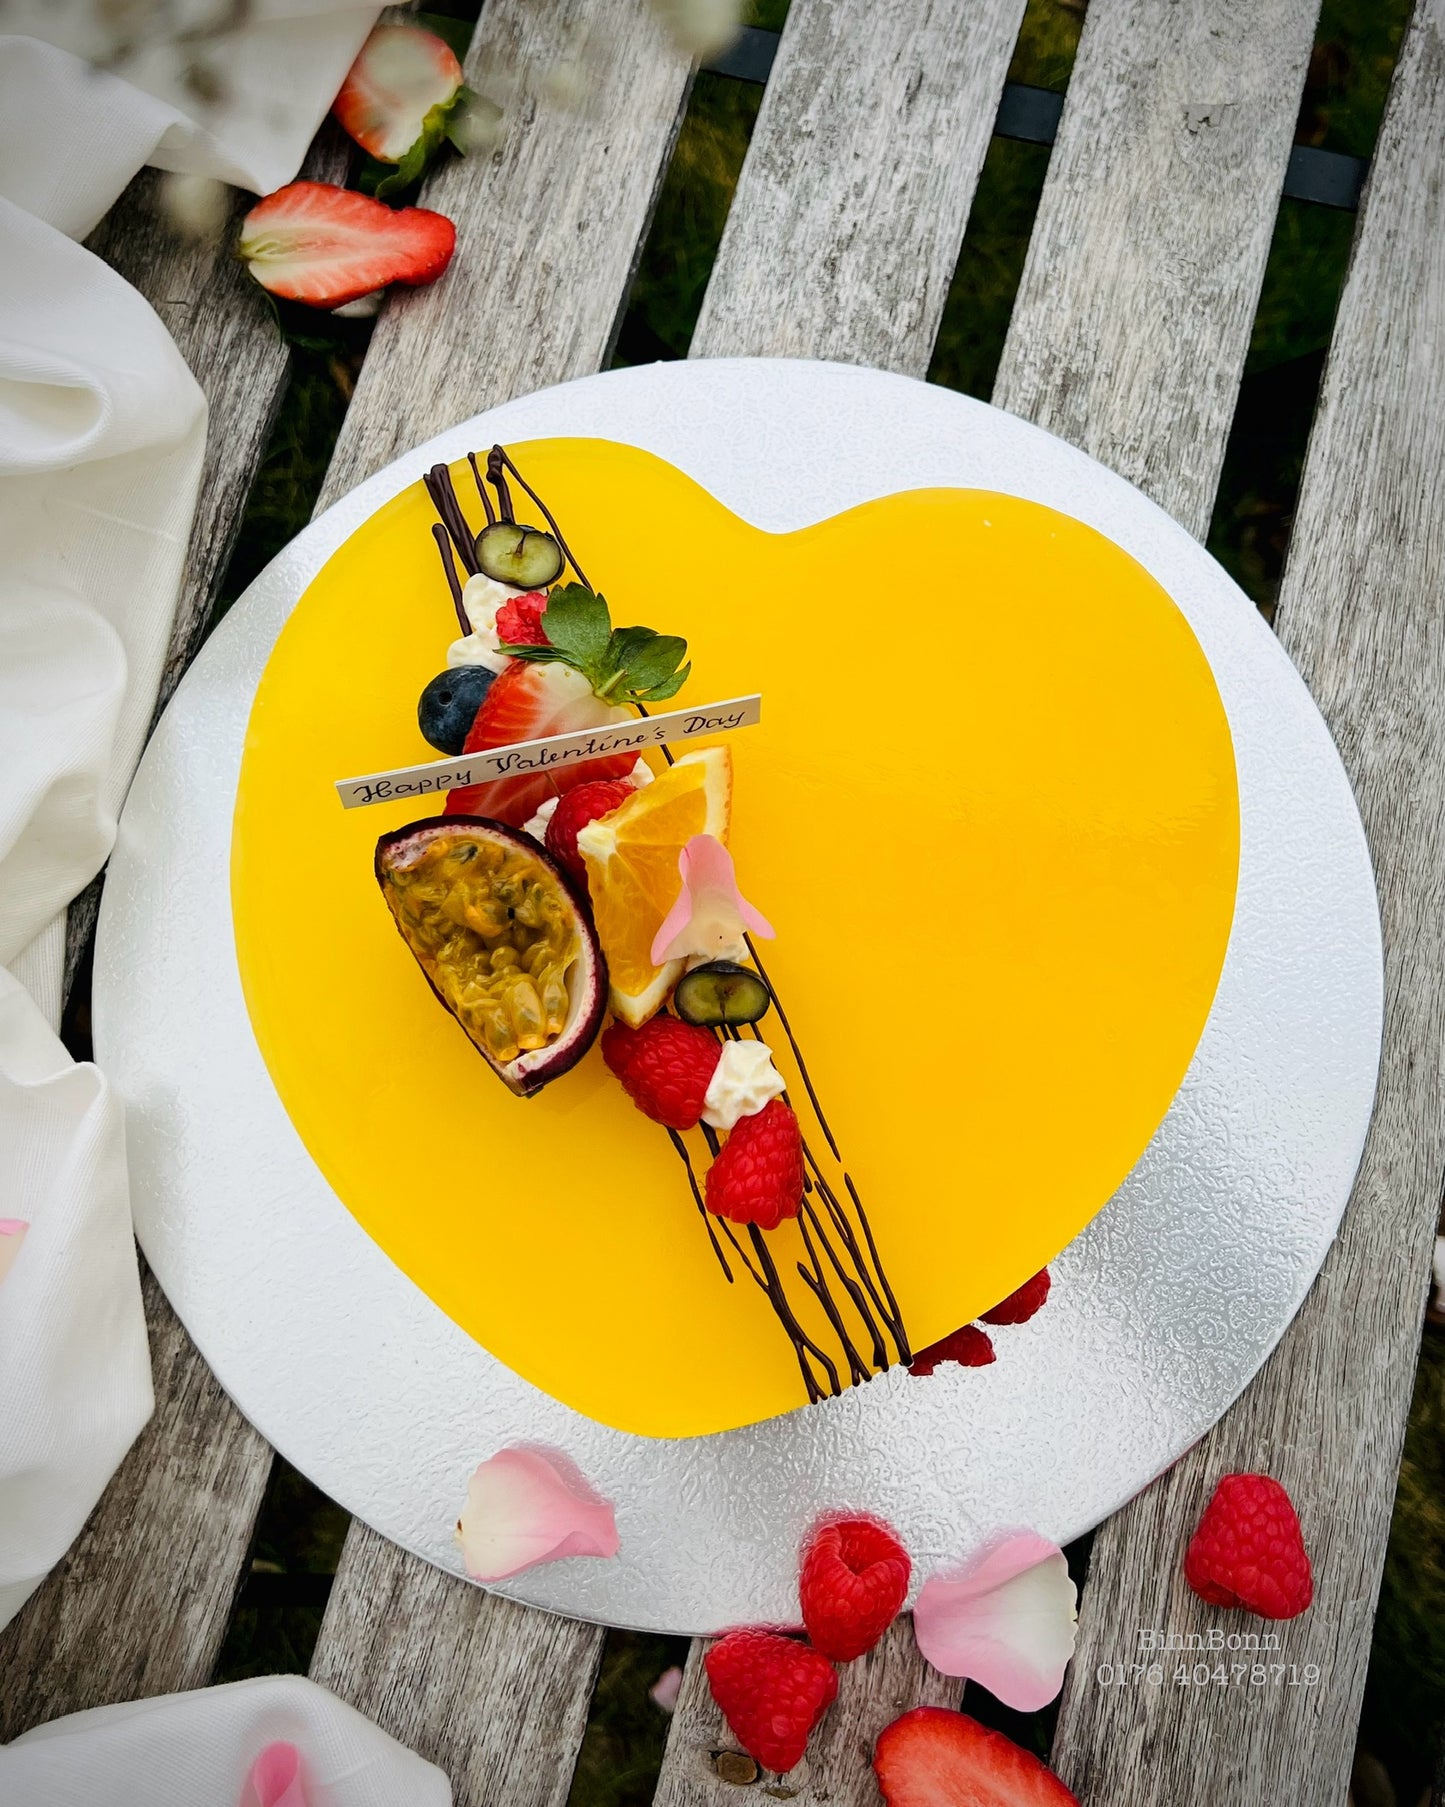 38. Torte "I give you my heart" mit Maracuja-Orangenspiegel und frischen Früchten 24 cm